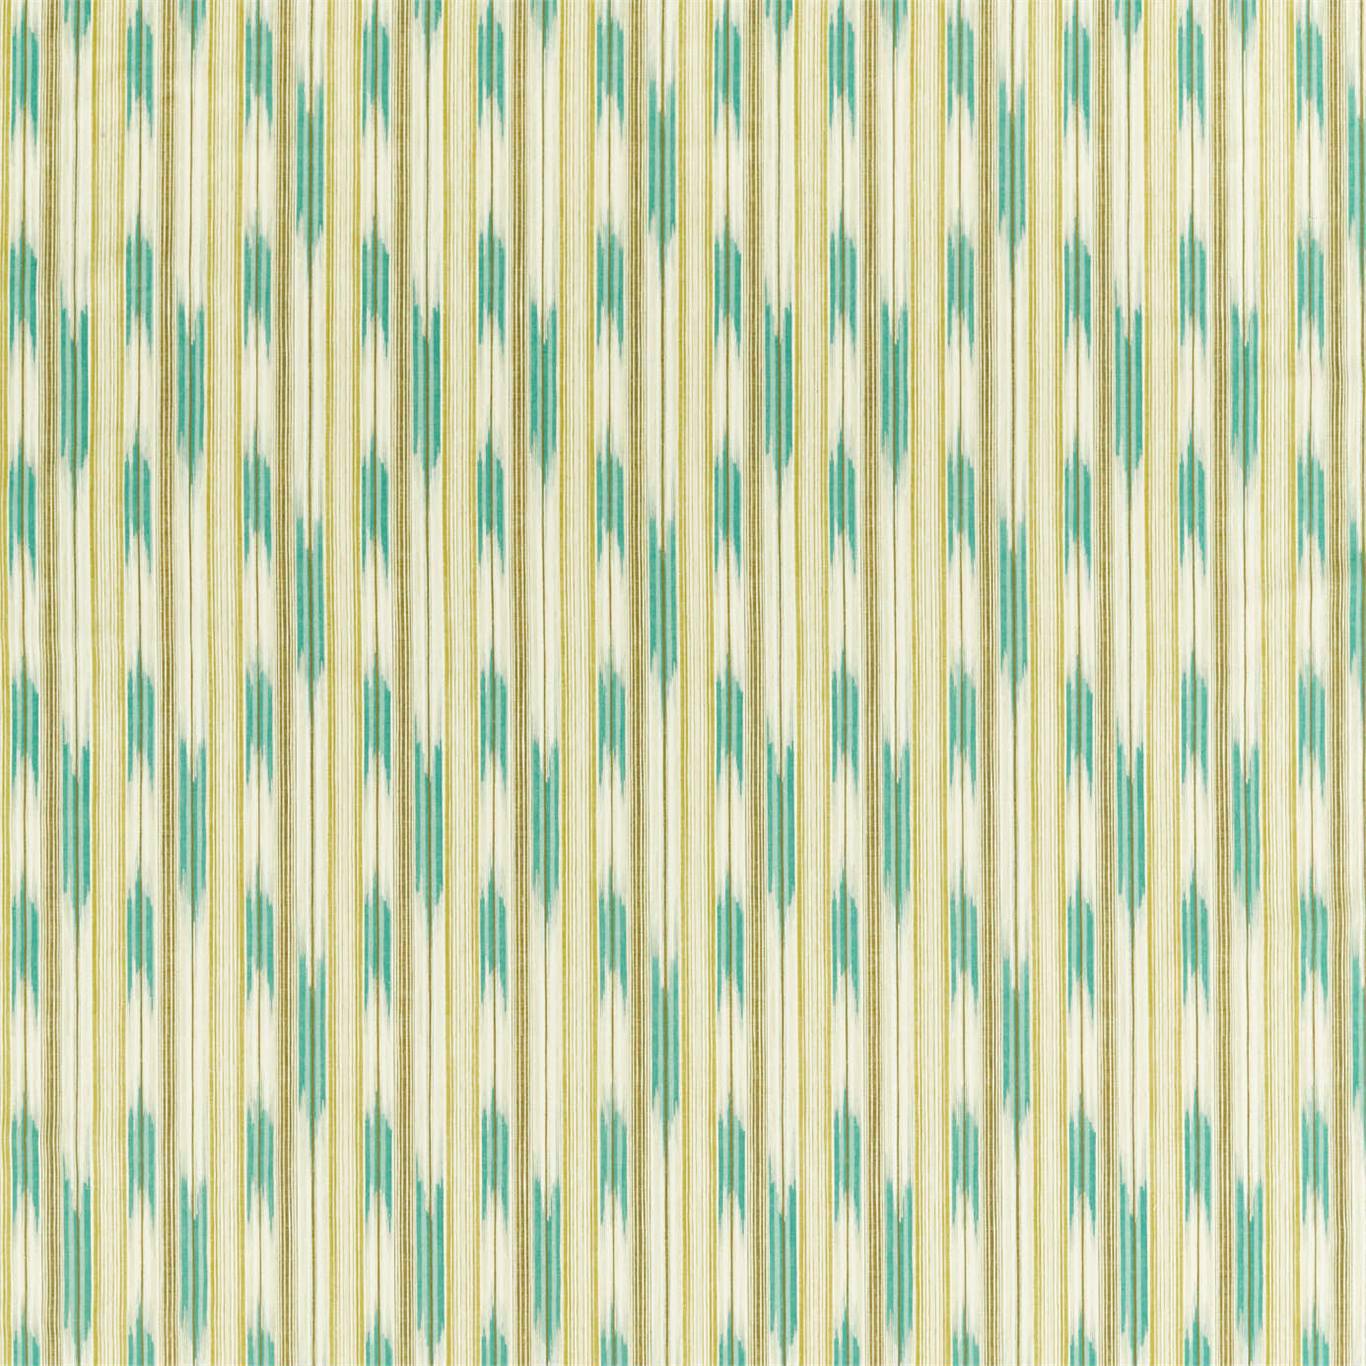 Ishi Nettle/Celeste Fabric by SAN